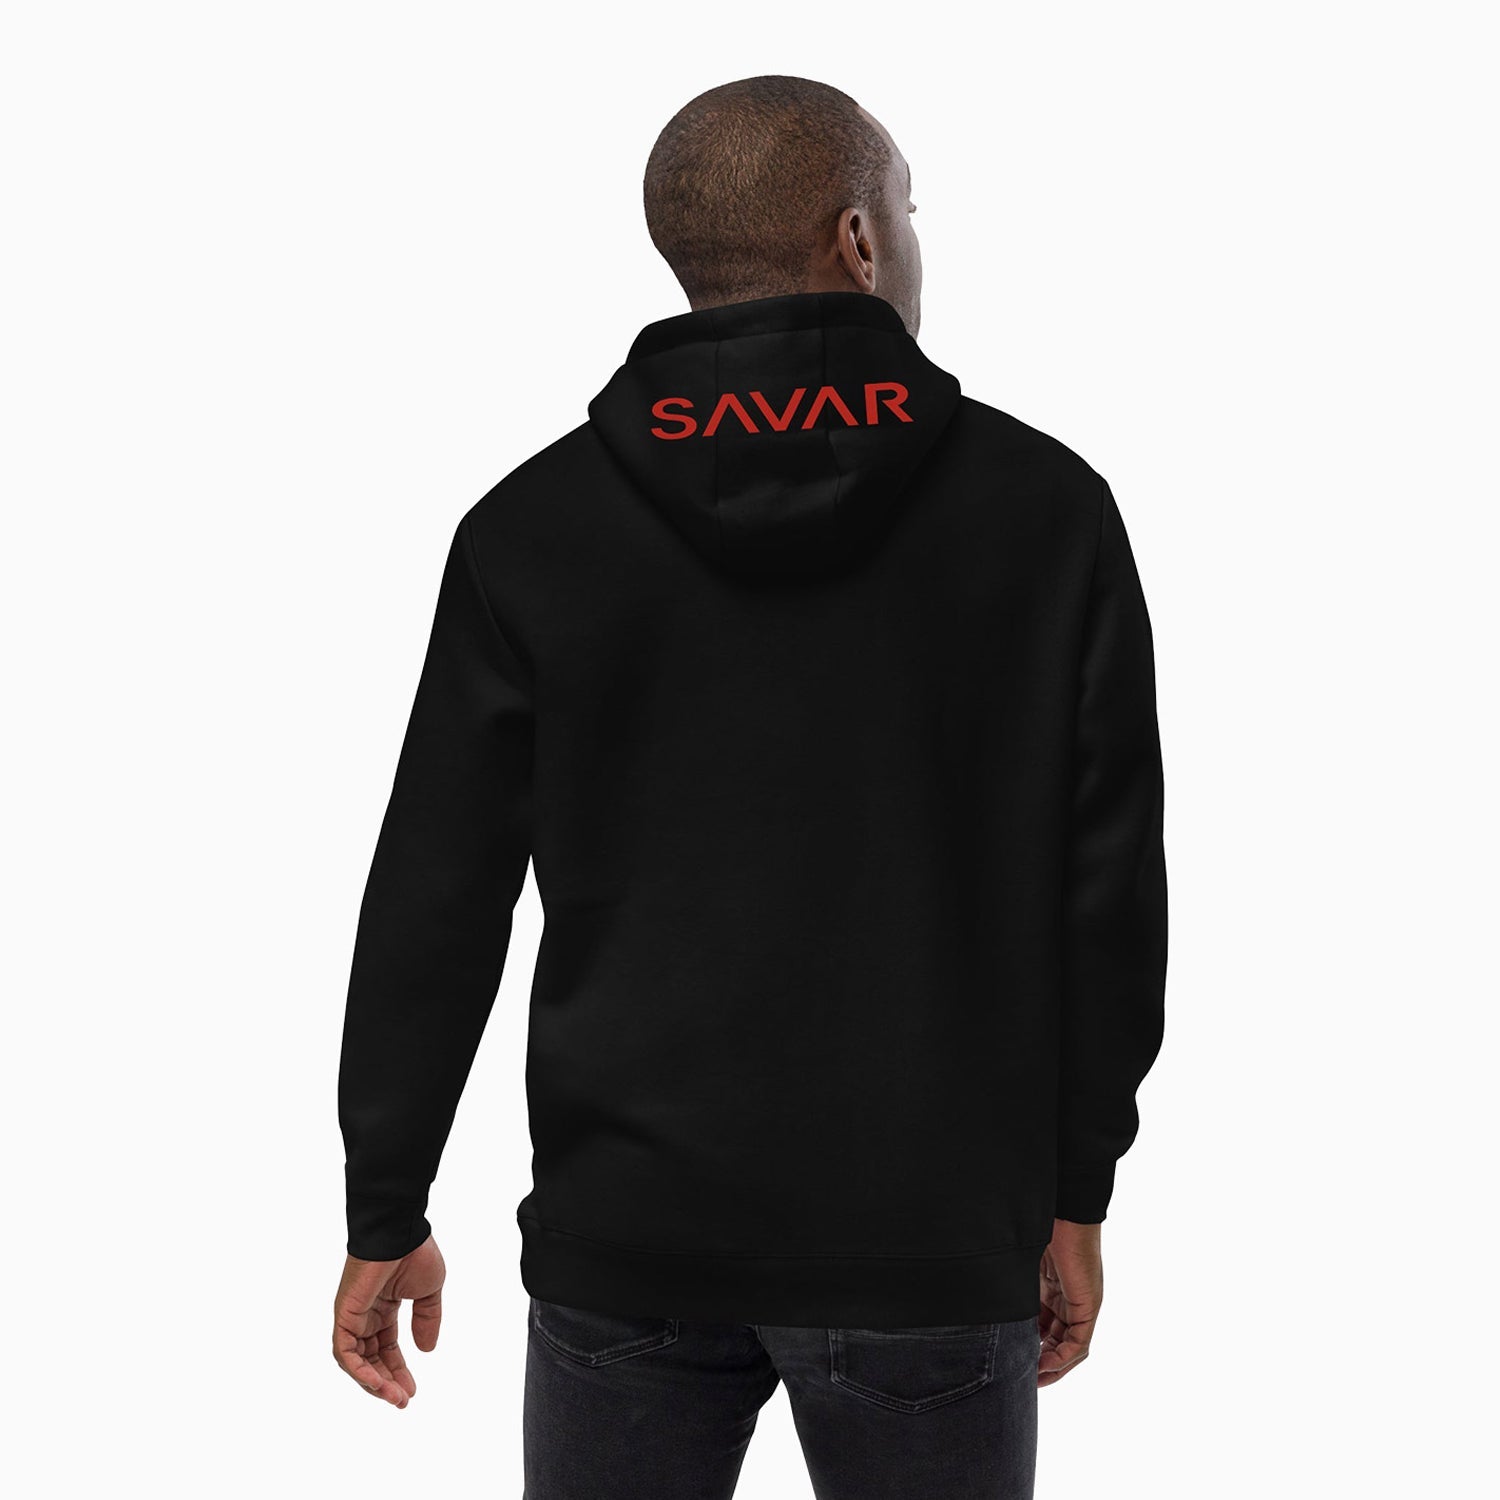 emblem-design-printed-pull-over-black-hoodie-for-men-sh103-010